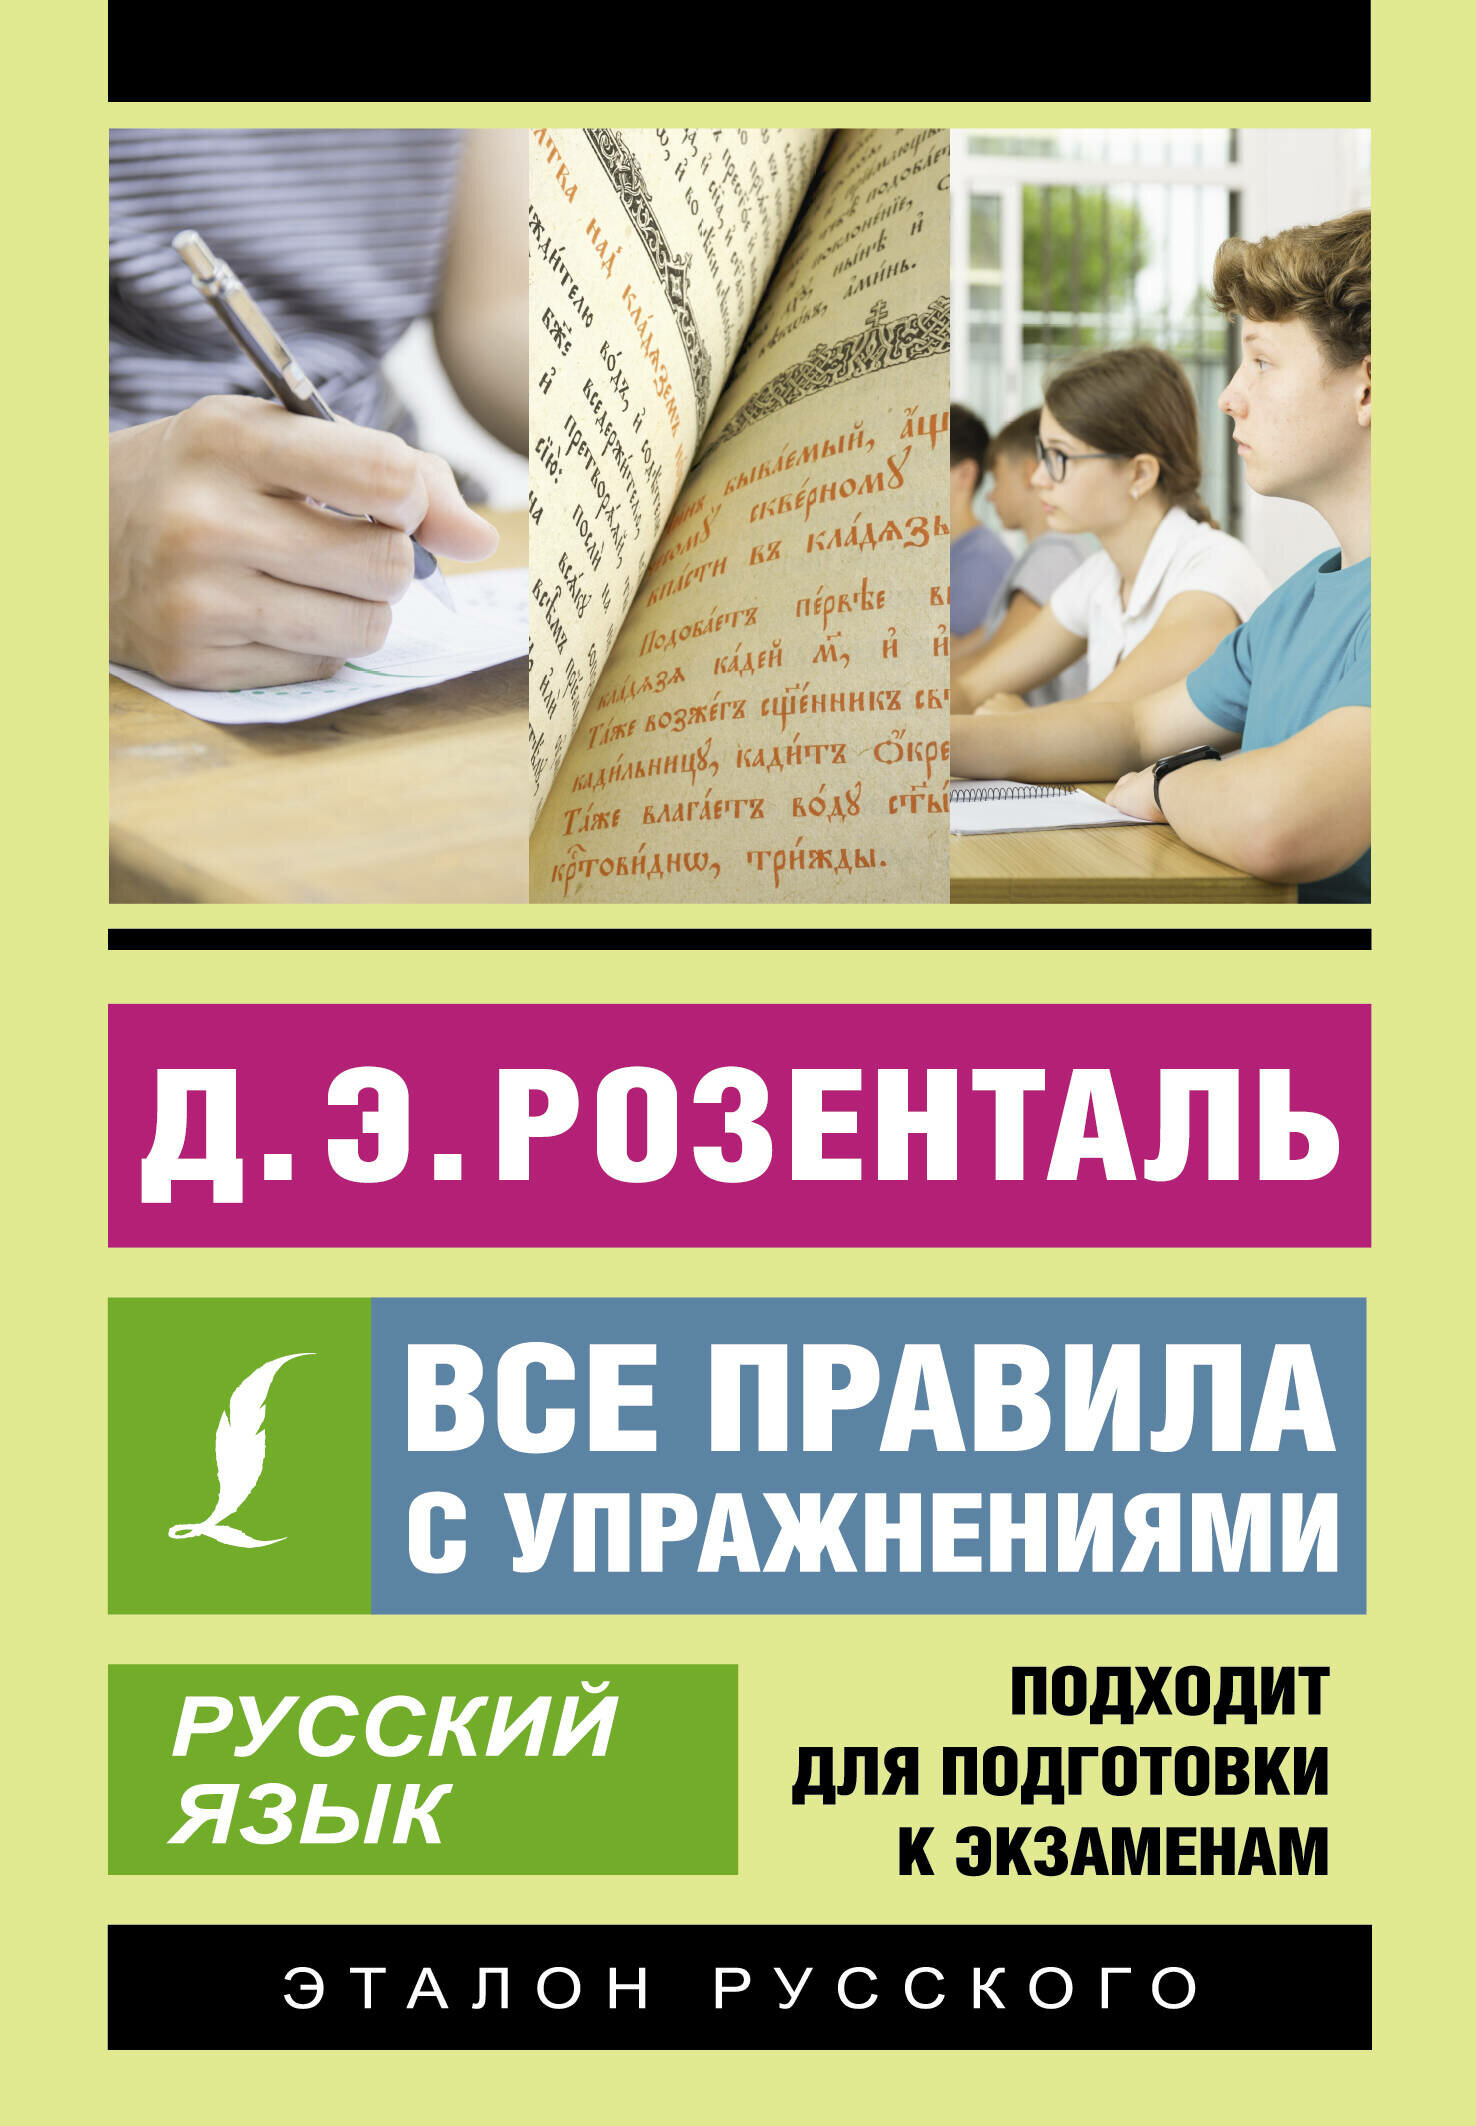 Русский язык. Все правила с упражнениями - фото №1